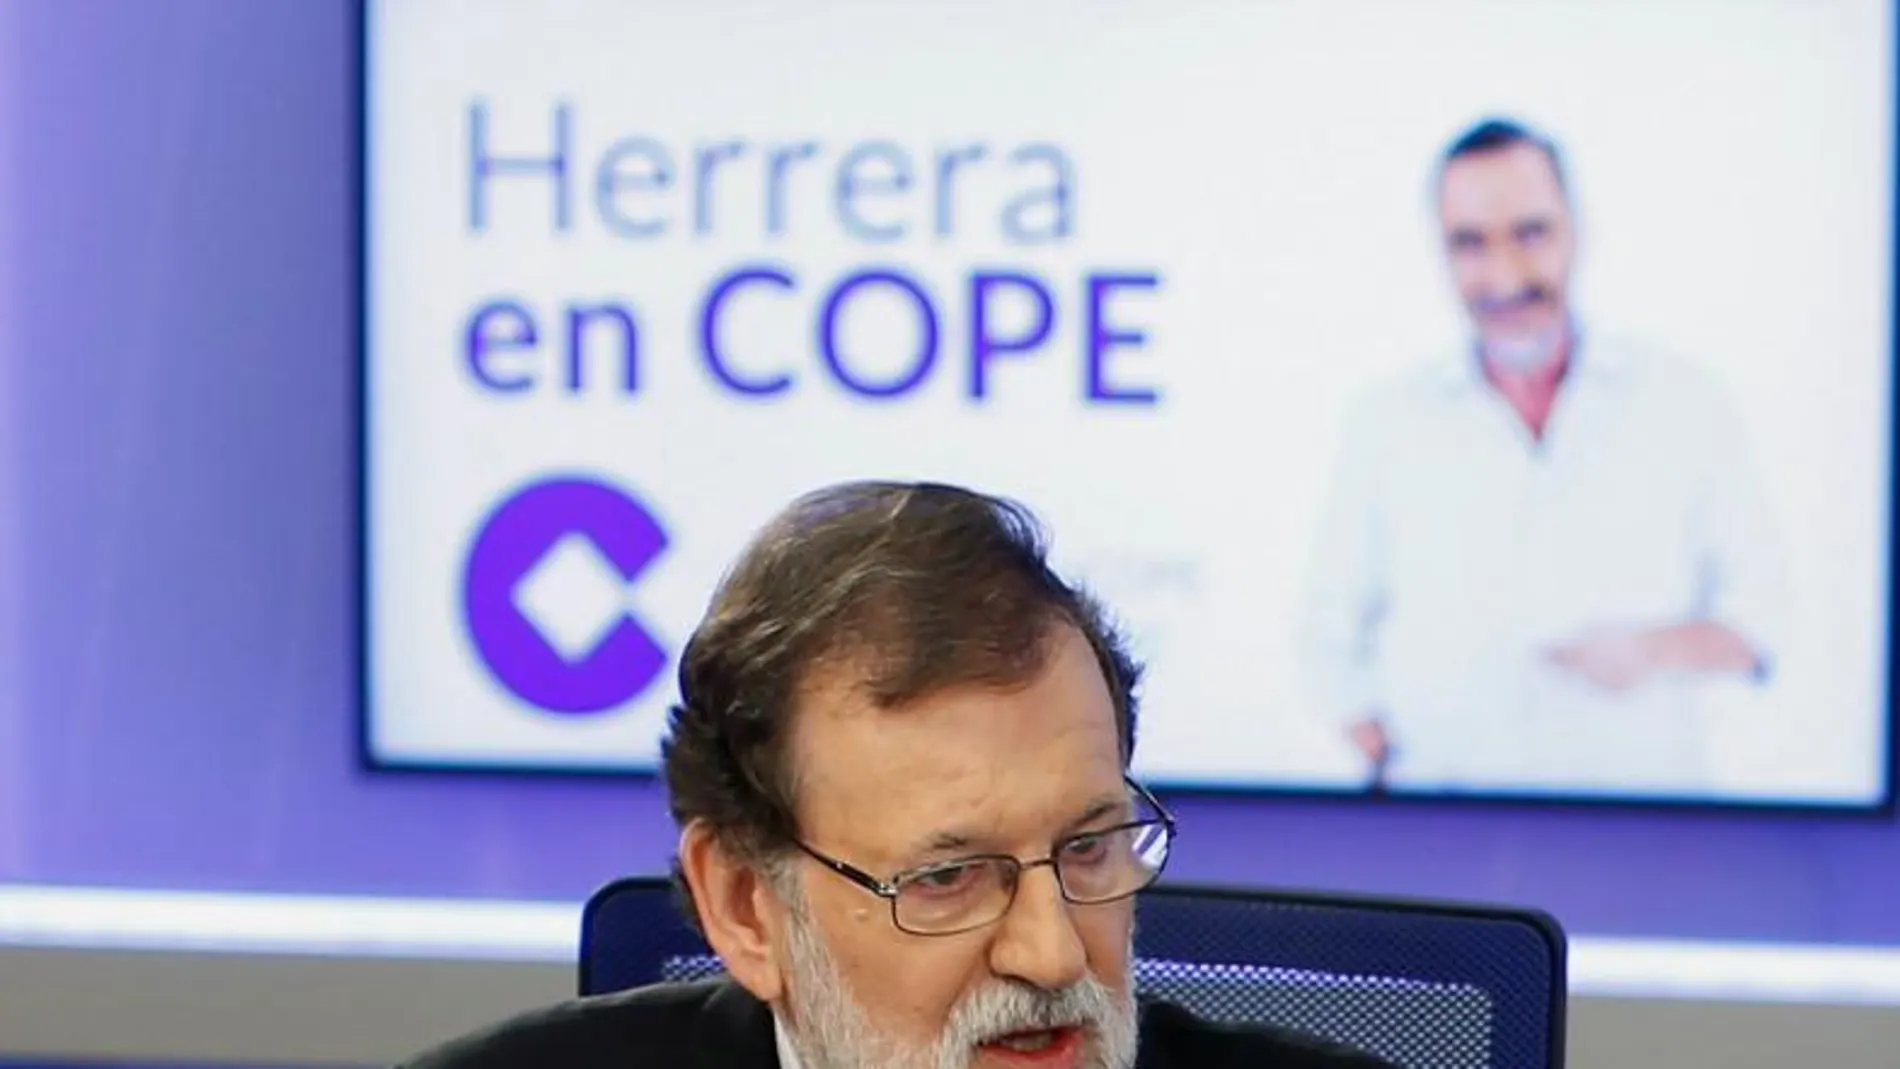 Fotografía facilitada por la Cadena COPE, del presidente del Gobierno, Mariano Rajoy, durante la entrevista que ha concedido esta mañana.